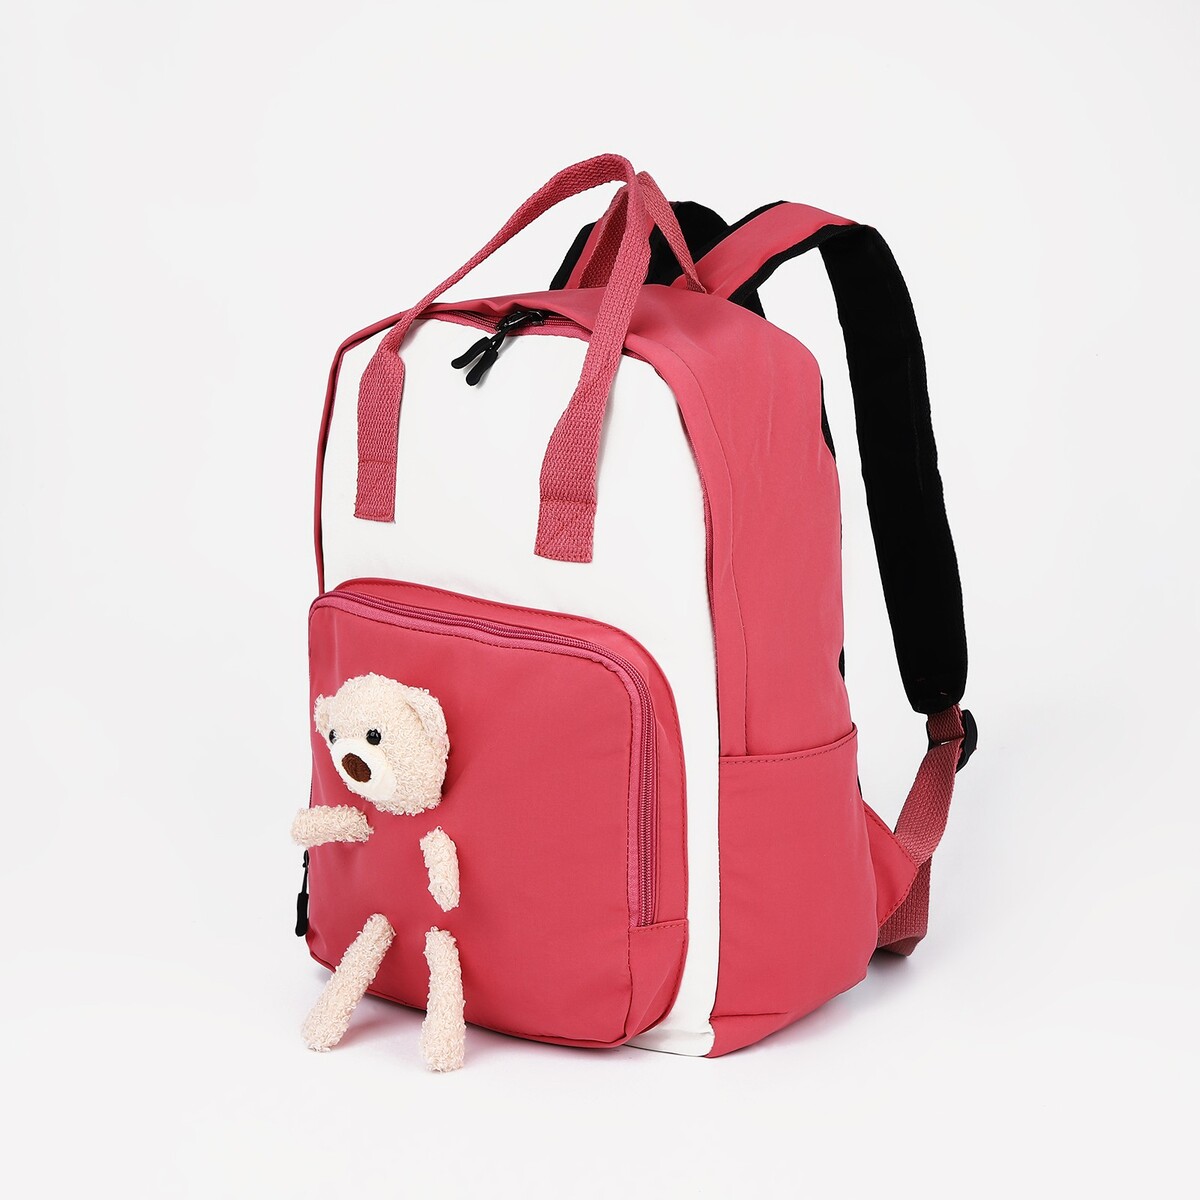 Рюкзак-сумка, отдел на молнии, наружный карман, цвет малиновый рюкзак дет единорог 15718 отд на молнии н карман малиновый